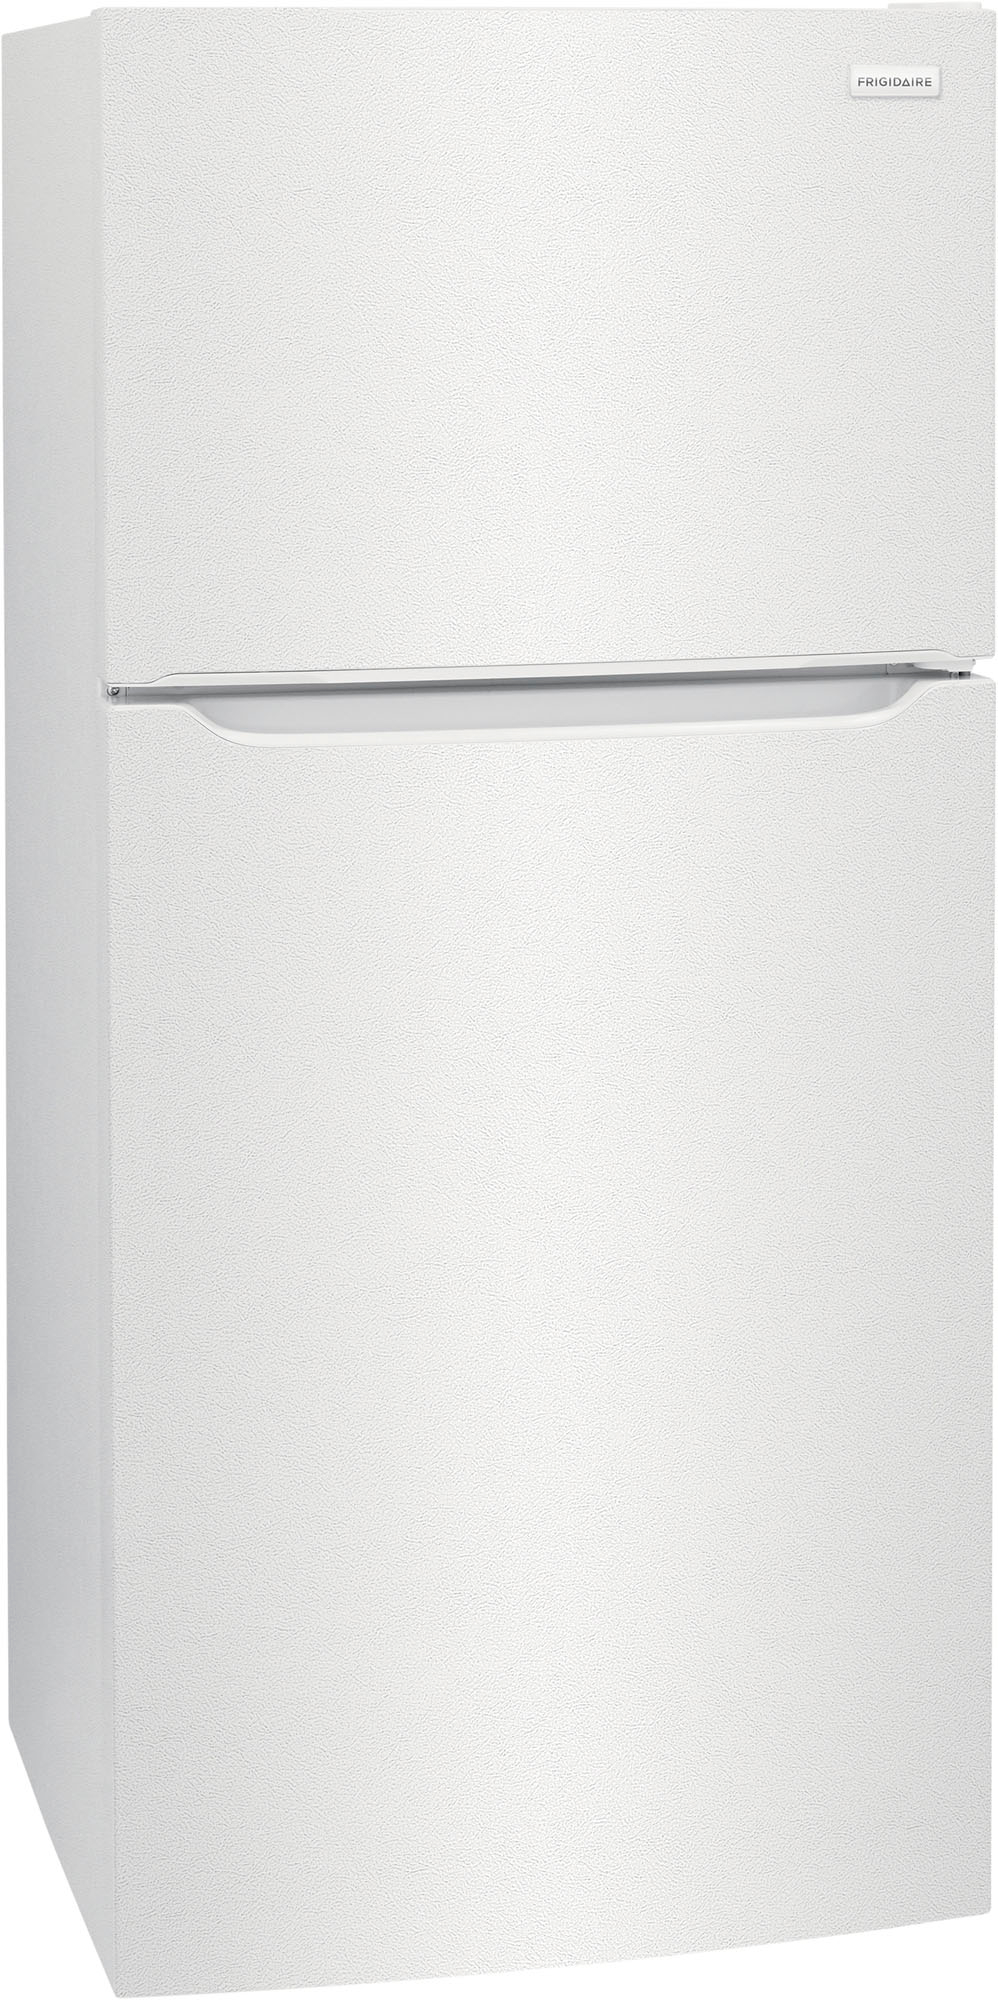 Left View: Frigidaire - 18.3 Cu. Ft. Top Freezer Refrigerator - White